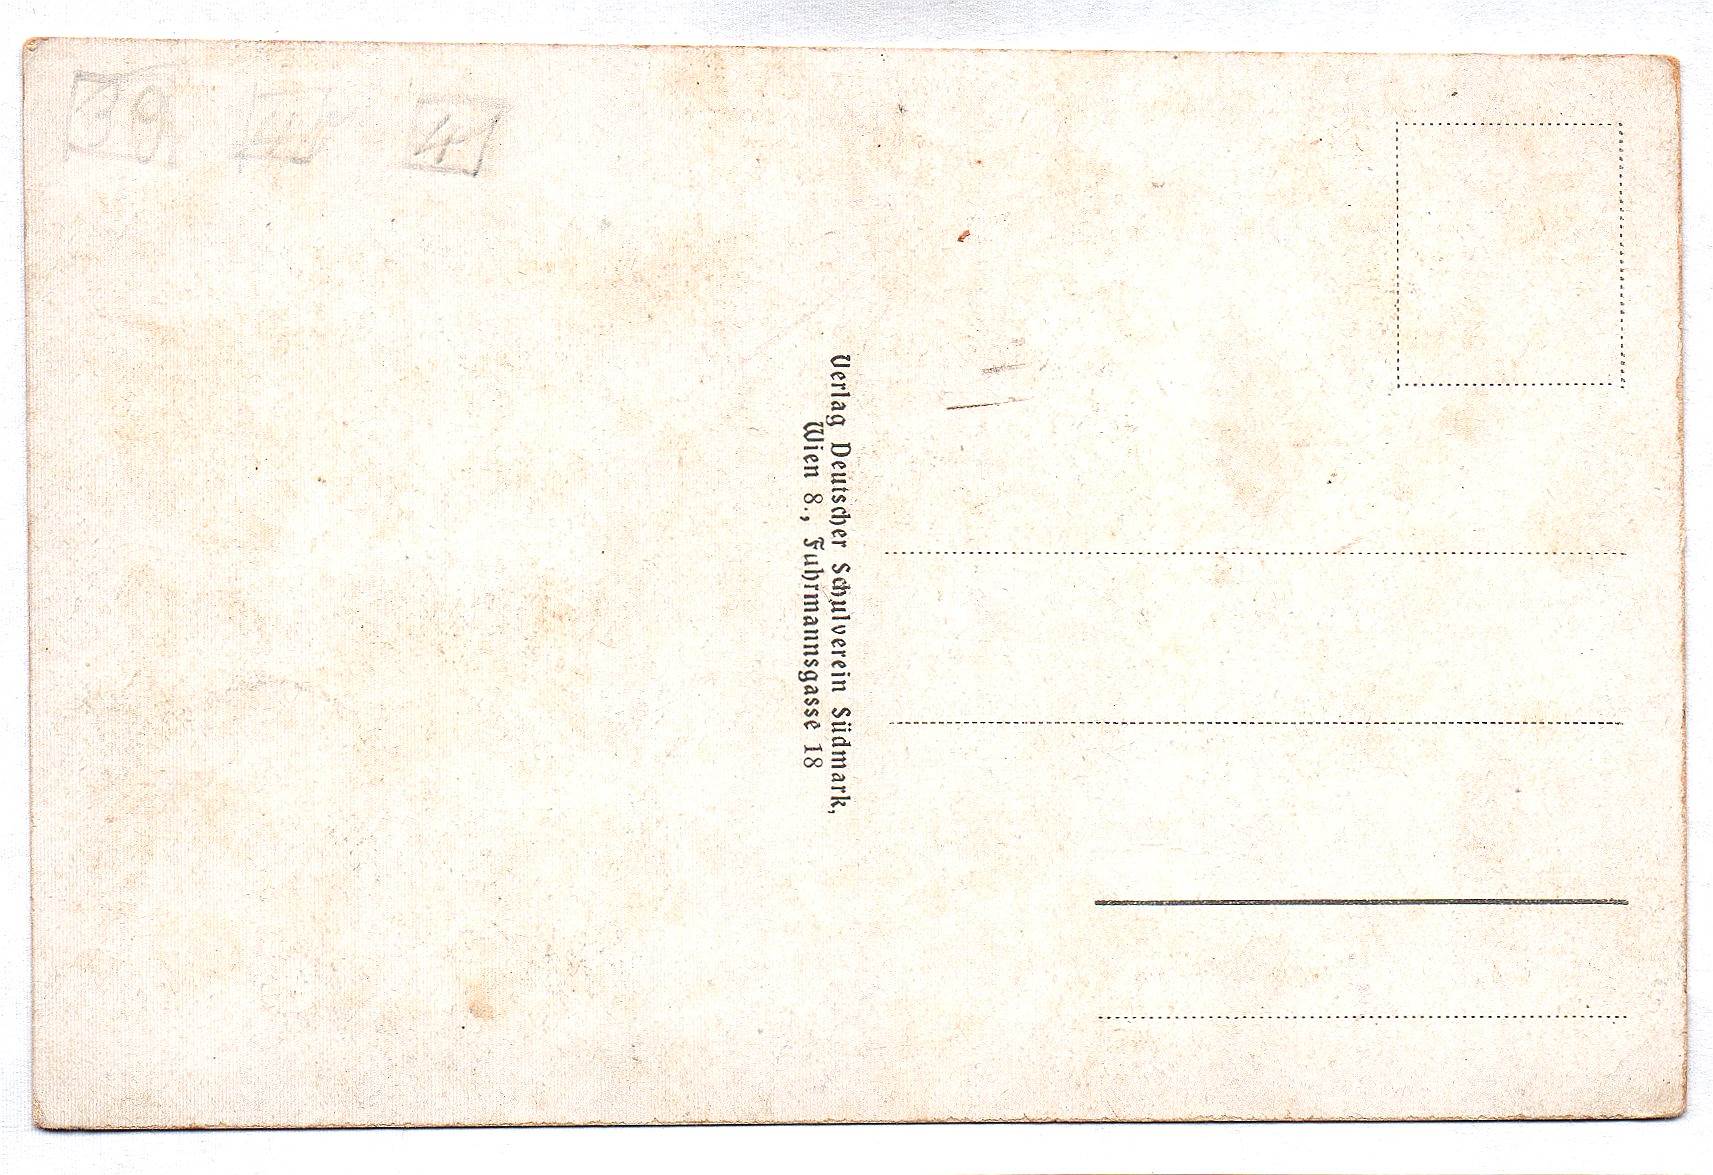 Ak Sommerfrische Weißenbach a. d. Triesting Postkarte Österreich